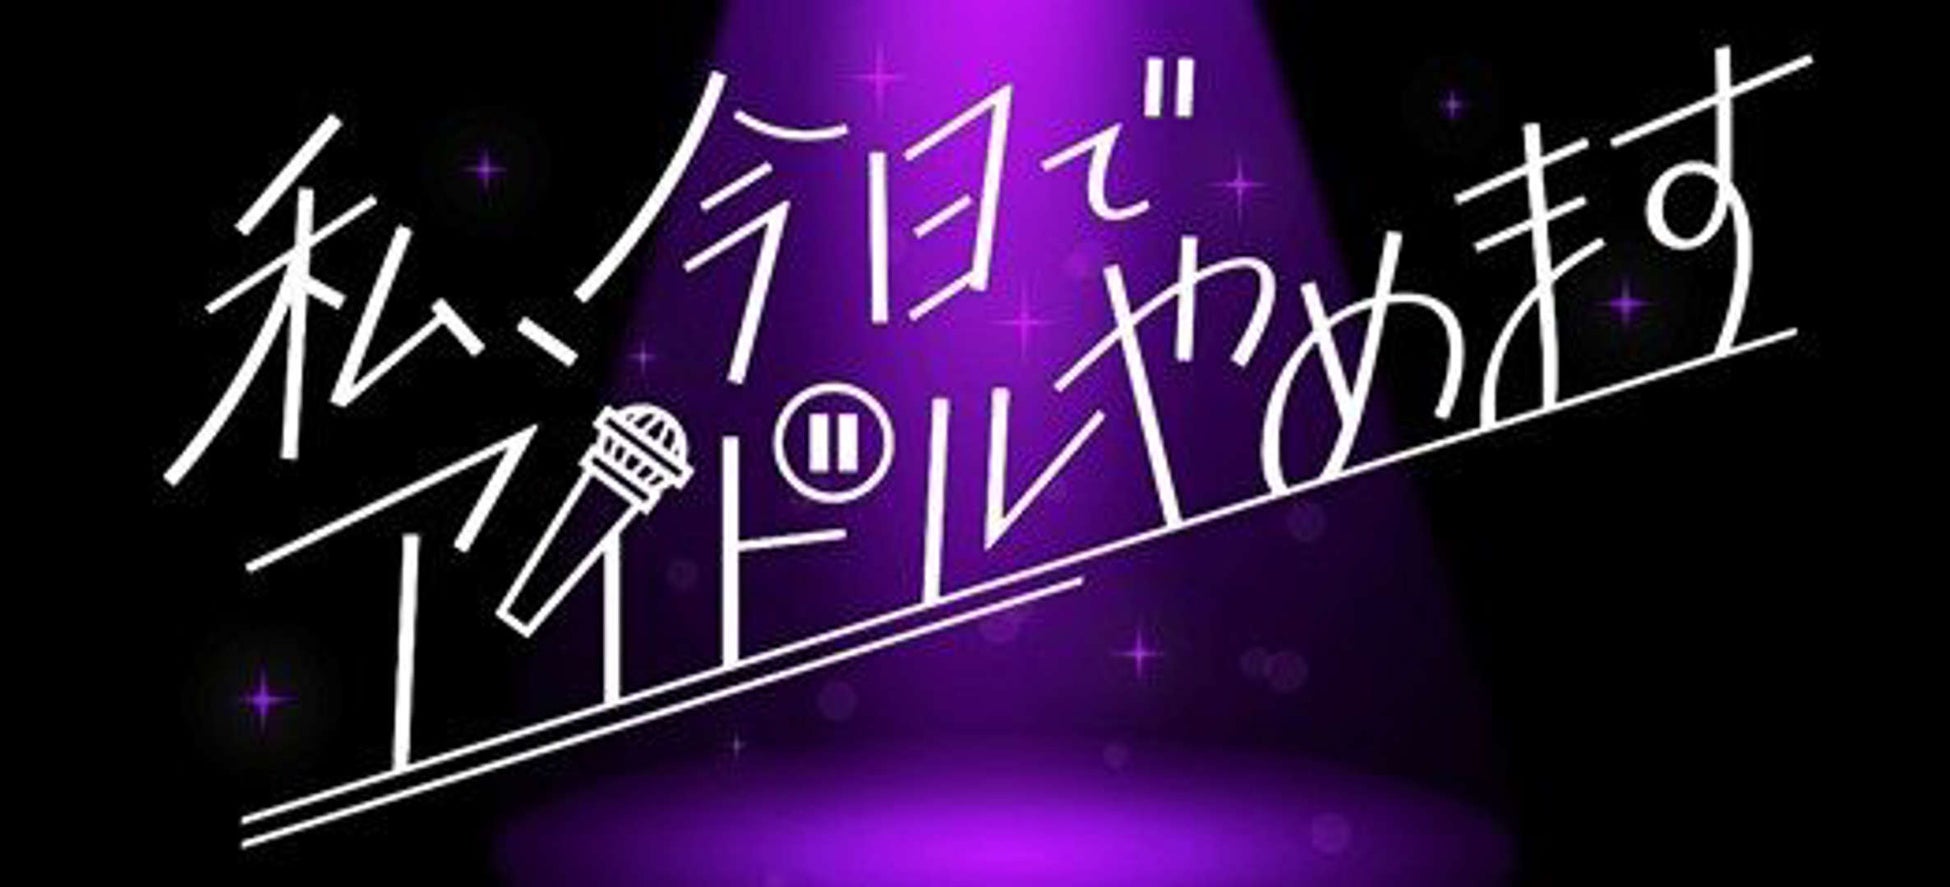 「クラグラ」を生み出したガールズグループオーディション密着番組「私、今日でアイドルやめます」の特別編が9月4日に日本テレビで放送が決定のサブ画像2